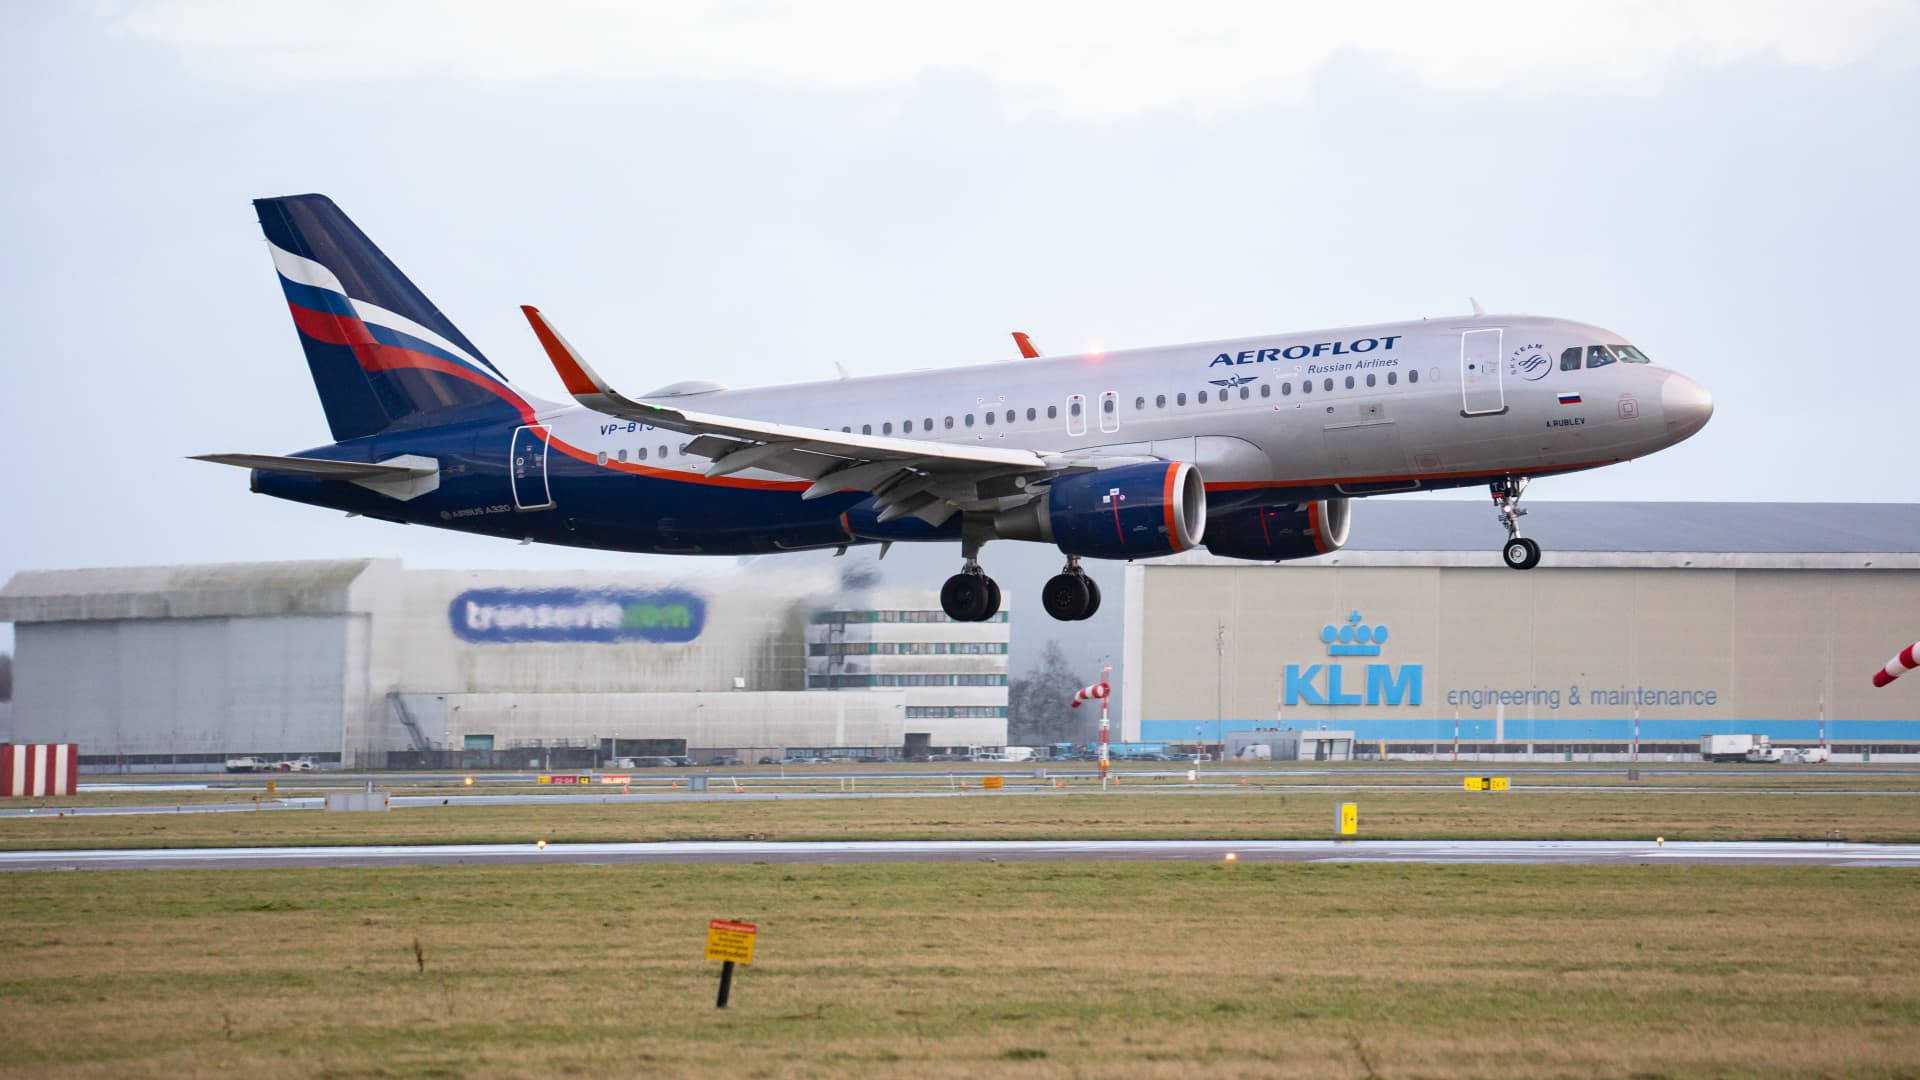 Aeroflotlanding: Aeroflot Landning Wallpaper